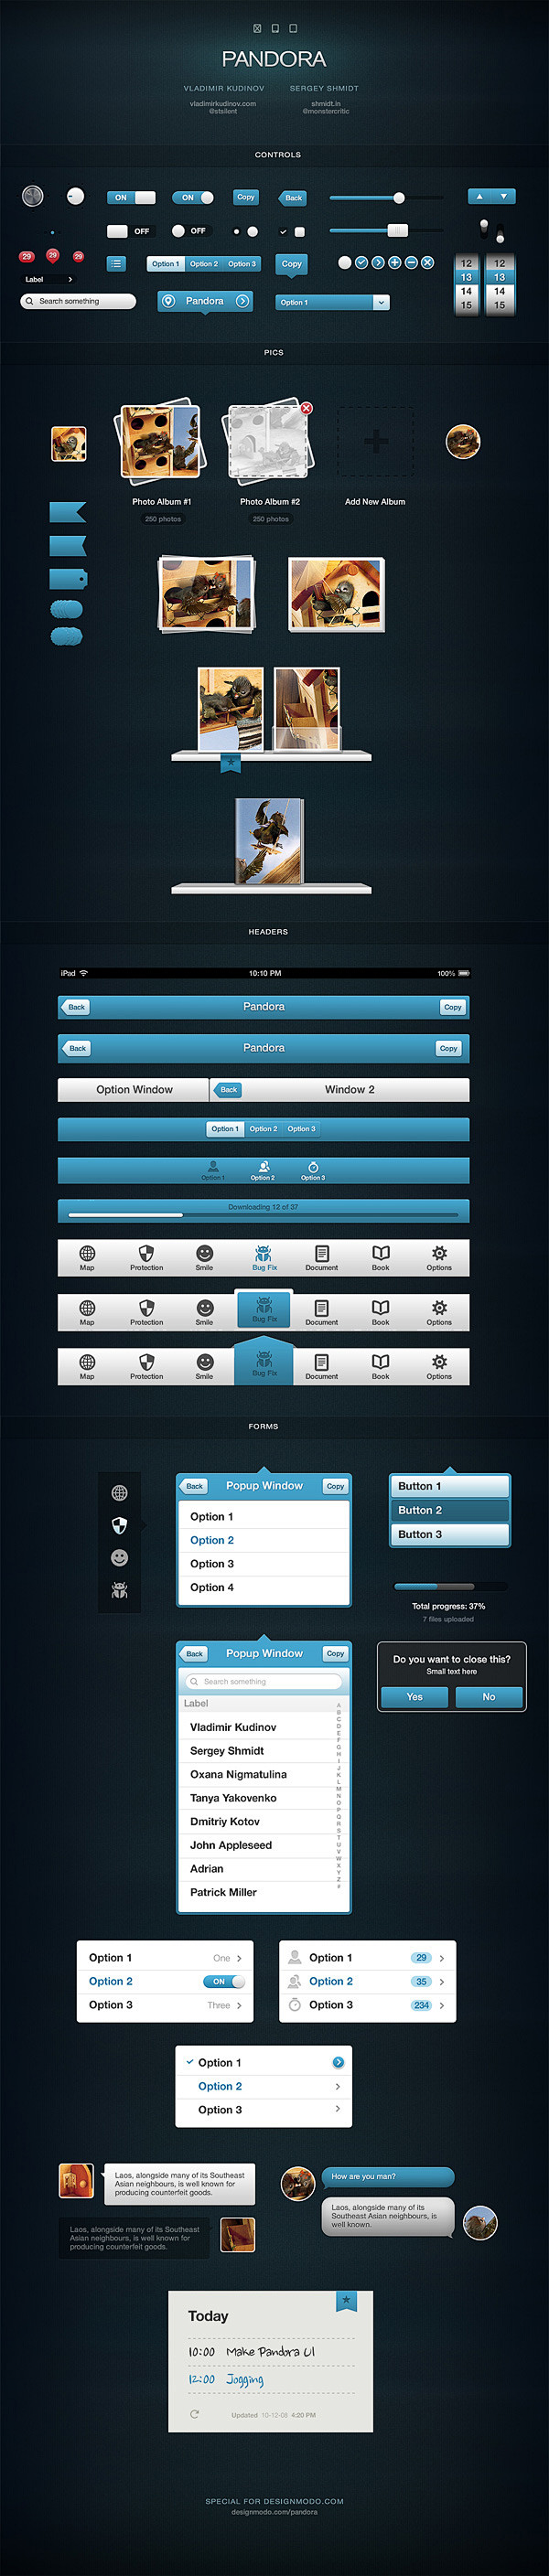 Pandora UI for iOS -...